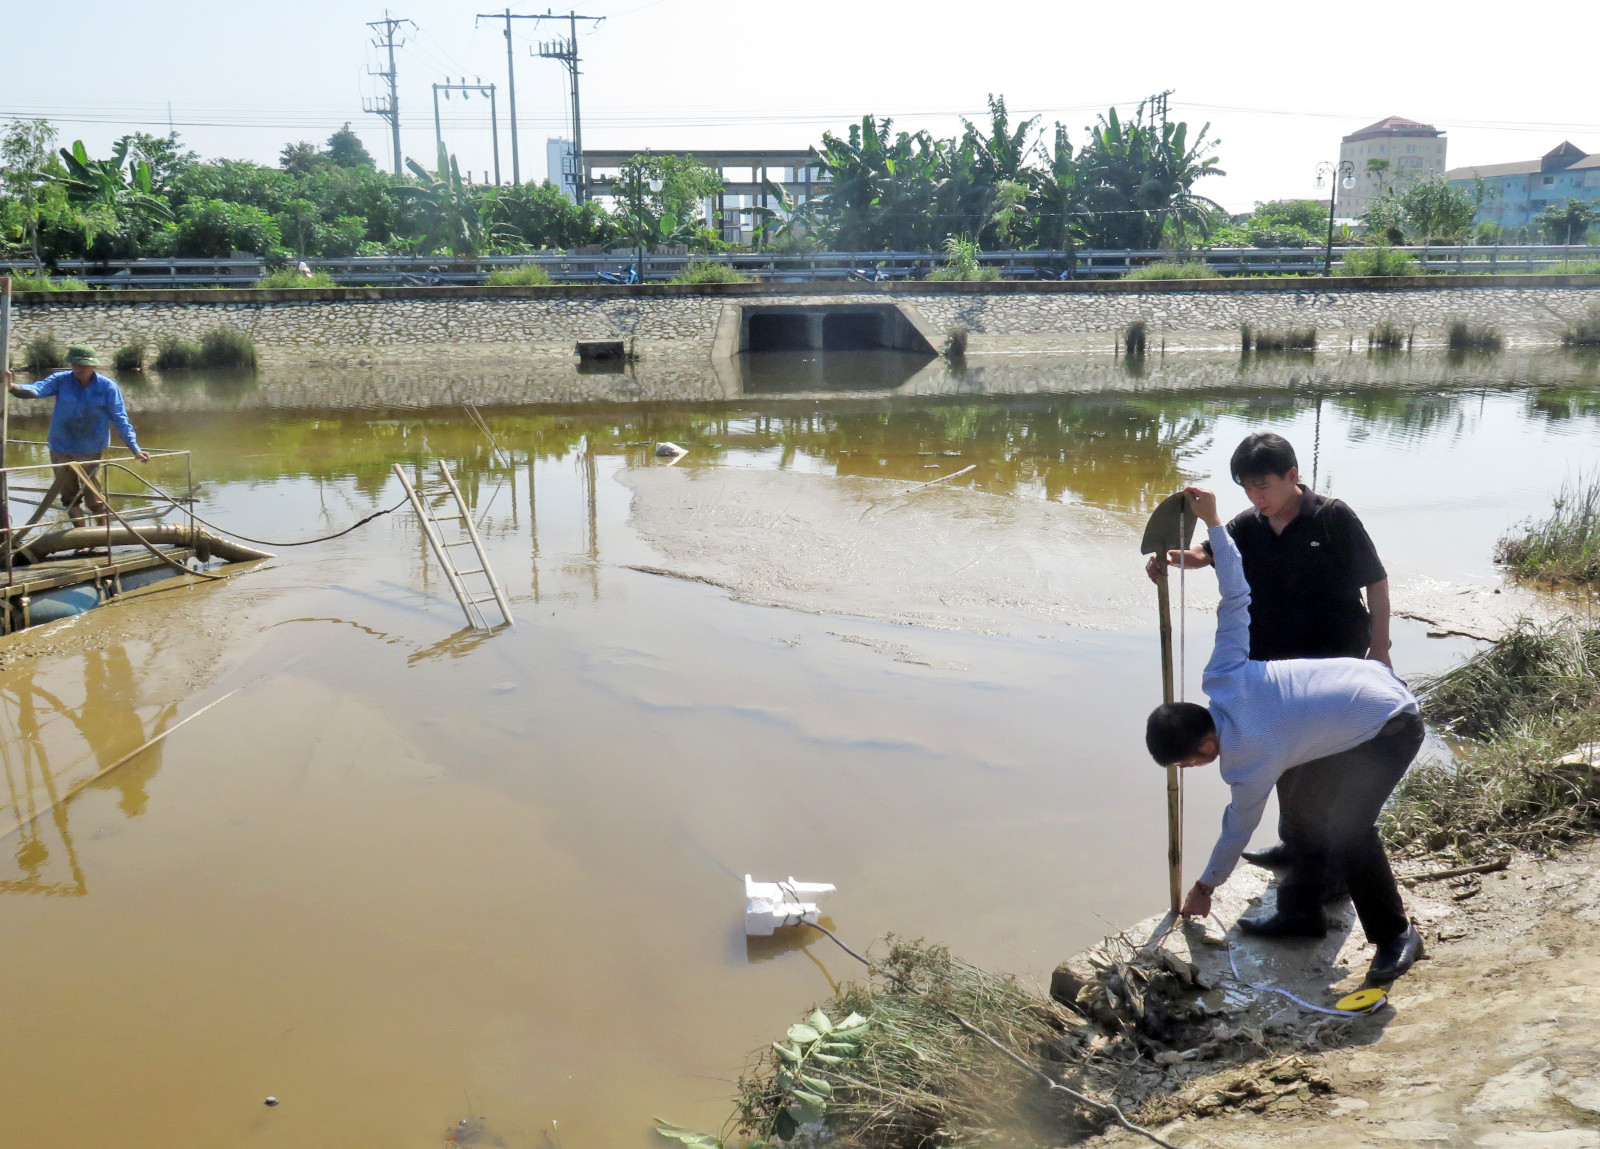 PV Báo Nghệ An cùng cán bộ trật tự đô thị phường Cửa Nam đo độ sâu của chiếc cống ngầm xả bùn thải. Ảnh: Hà Giang